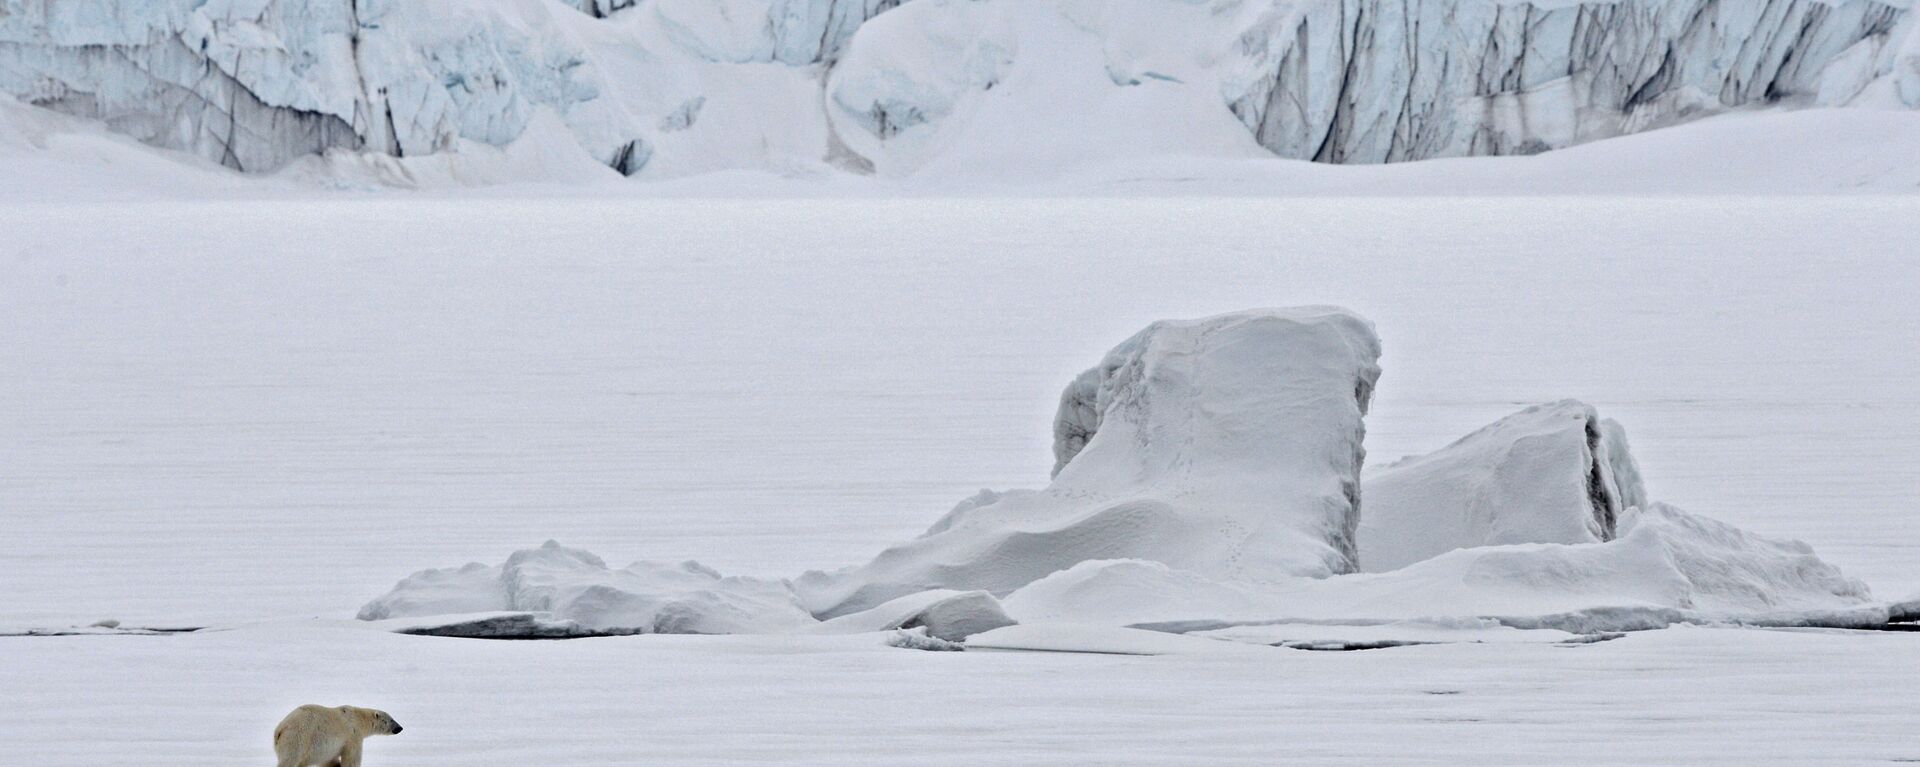 Белый медведь на льдине в Северном Ледовитом океане - Sputnik Latvija, 1920, 21.04.2021